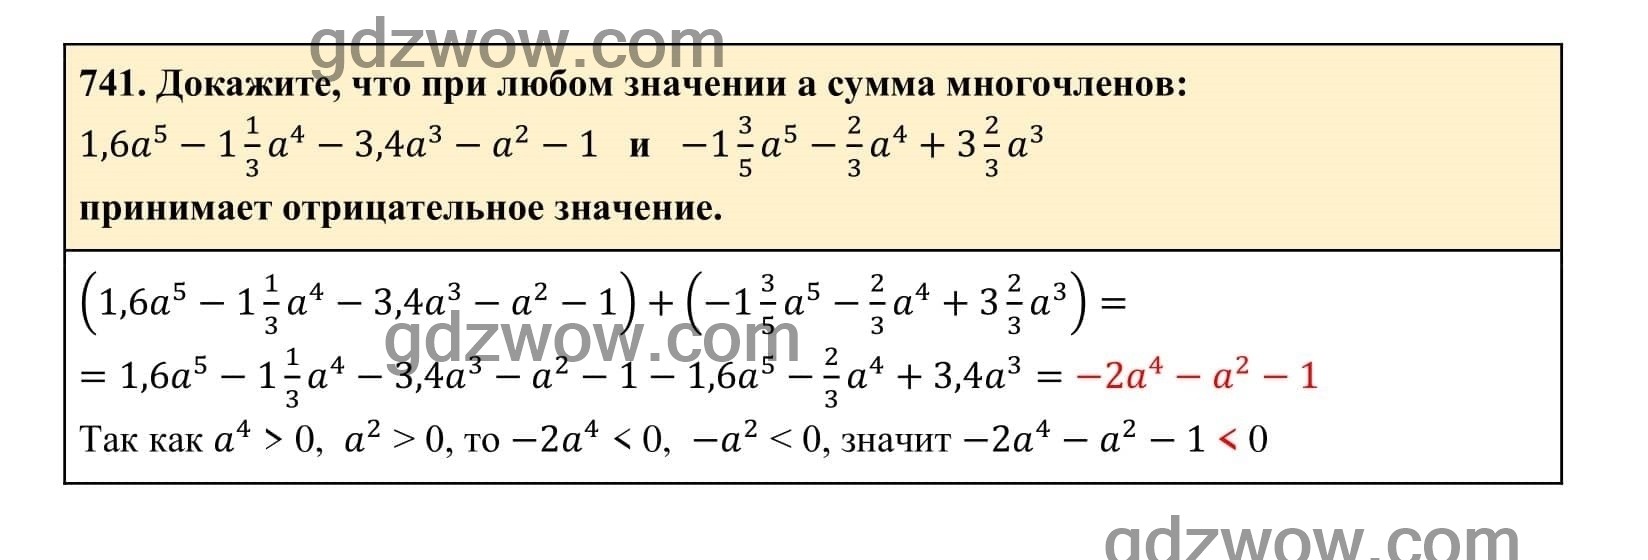 Упражнение 741 - ГДЗ по Алгебре 7 класс Учебник Макарычев (решебник) - GDZwow